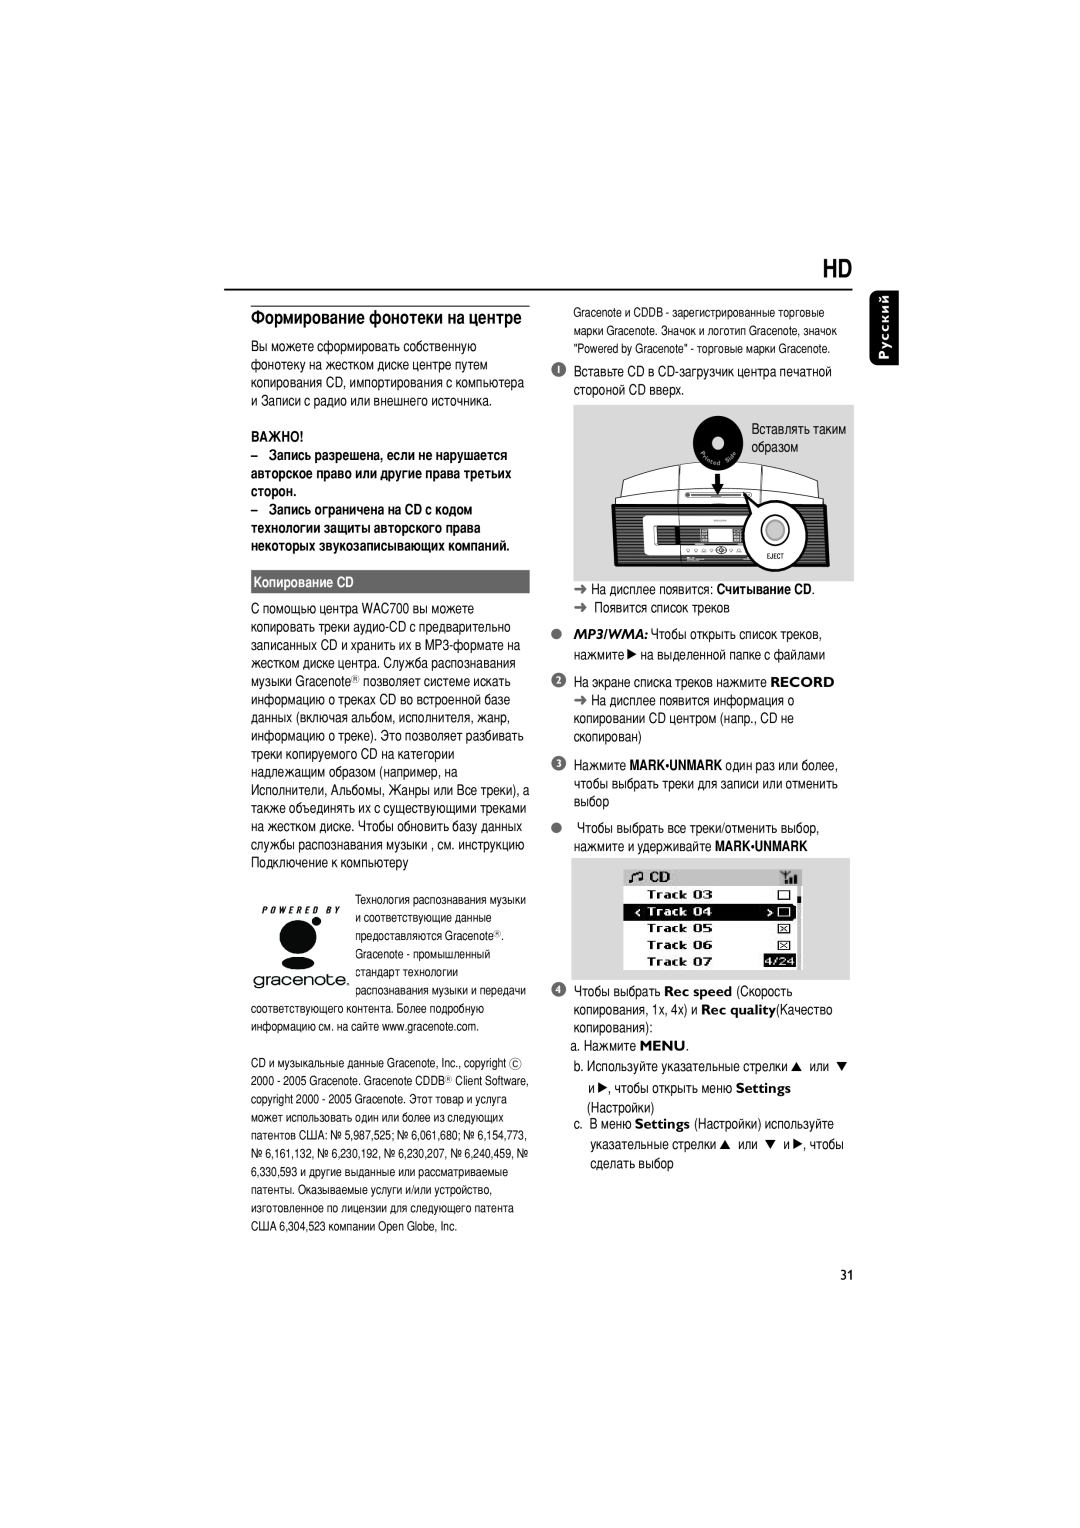 Philips WACS700 manual îÓÏËÓ‚‡ÌËÂ ÙÓÌÓÚÂÍË Ì‡ ˆÂÌÚÂ, äÓÔËÓ‚‡ÌËÂ CD, Русский 